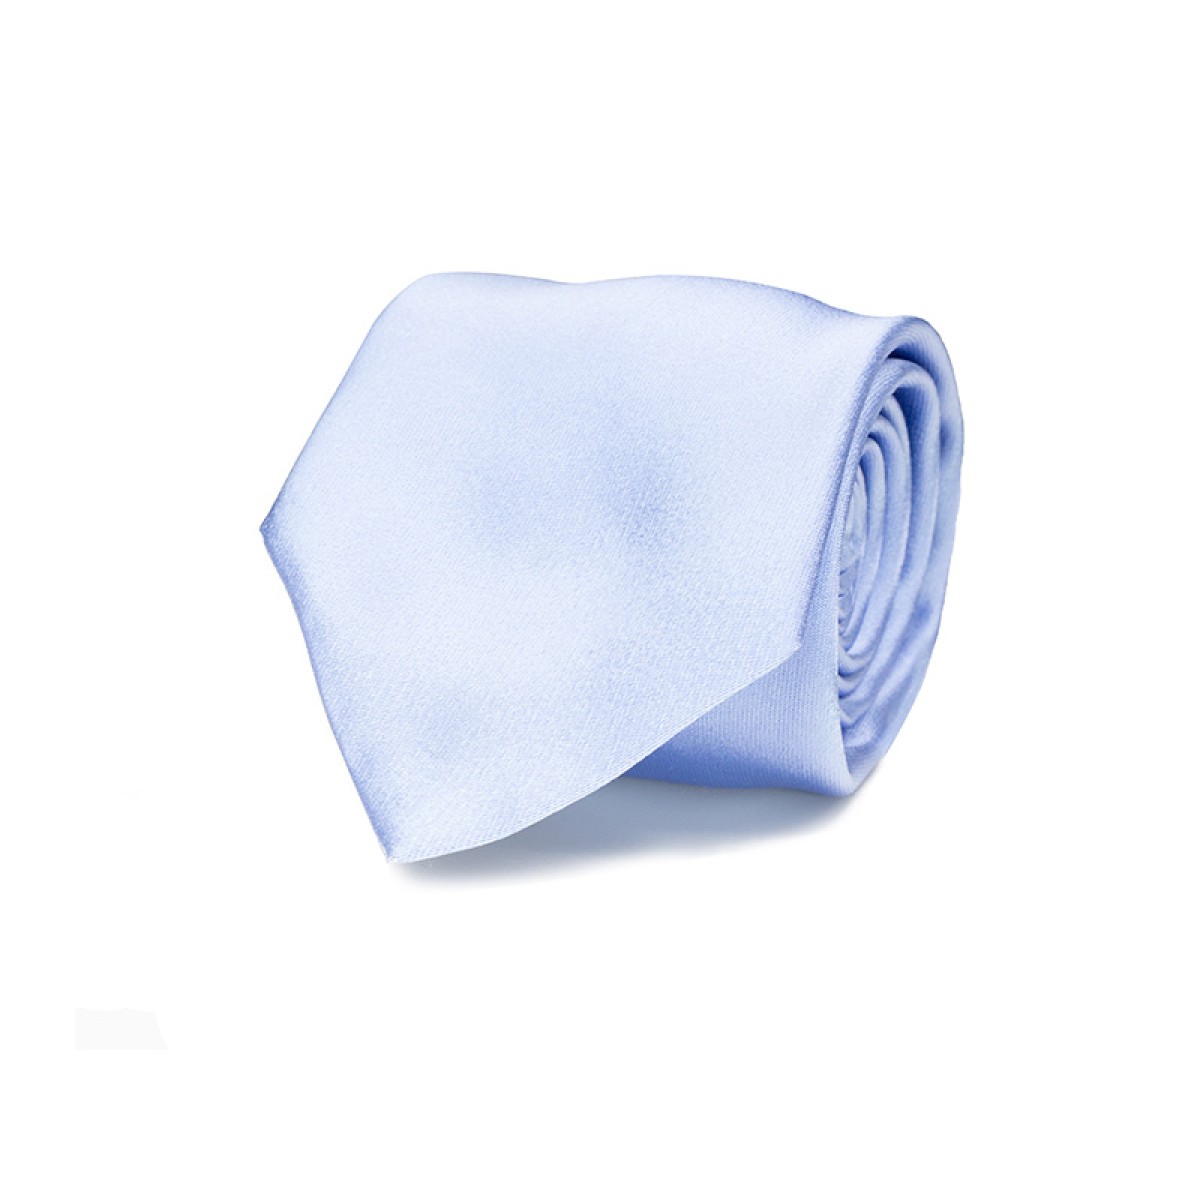 Necktie Progetto Premium / 100% silk / NOS / Skyblue